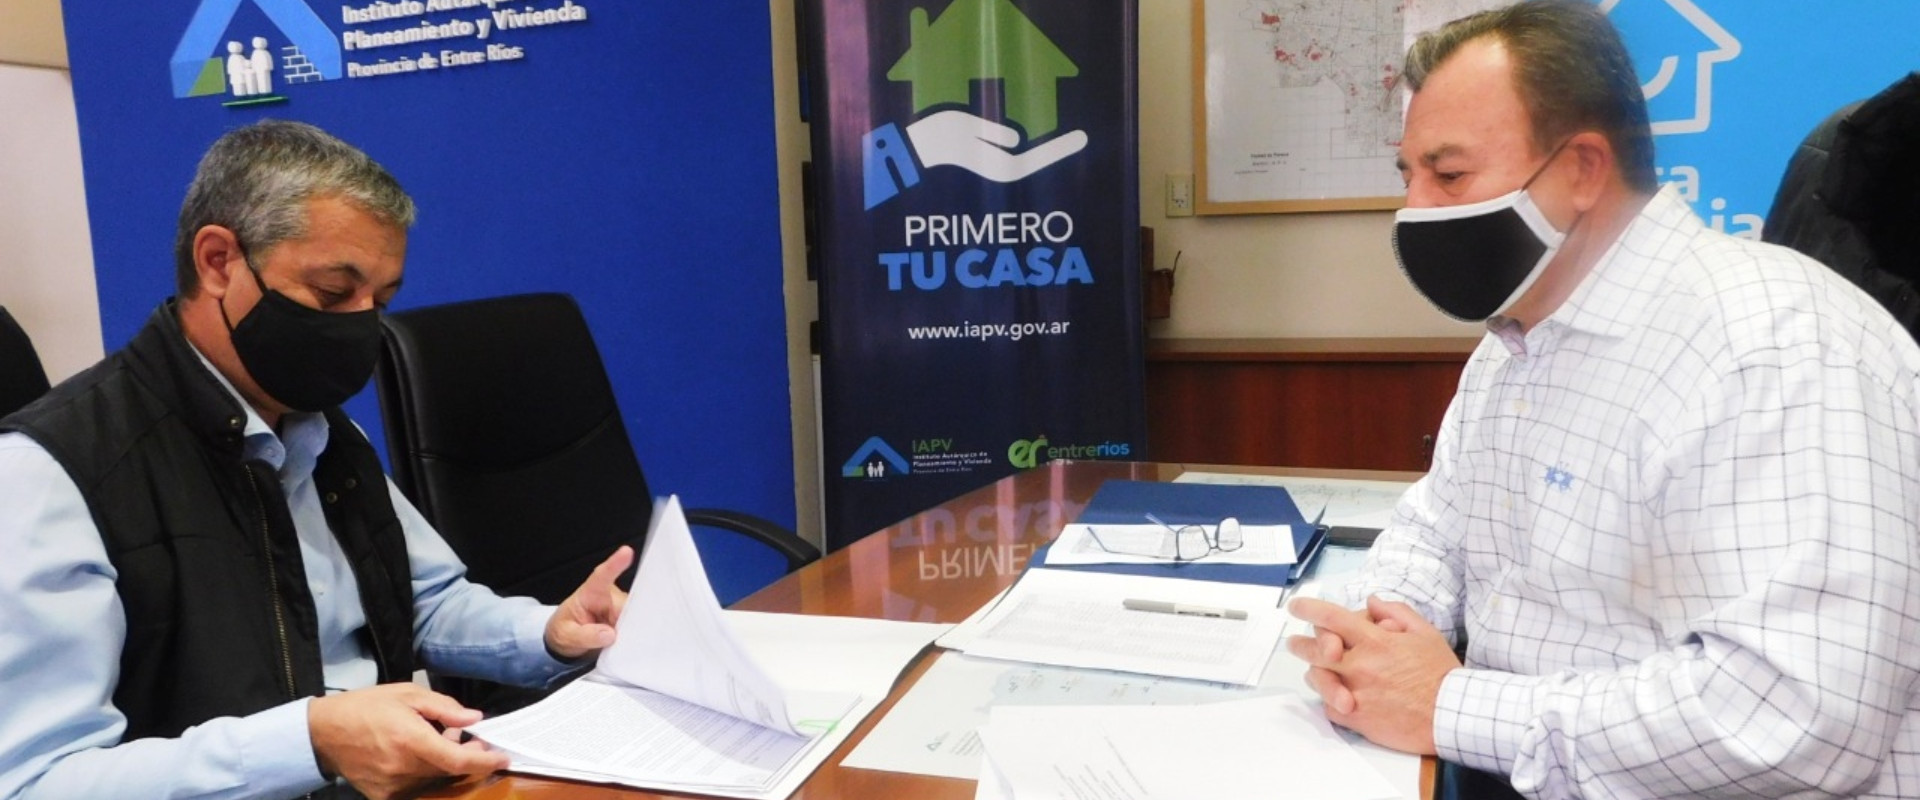 Construirán 65 viviendas en Urdinarrain con fondos nacionales y provinciales